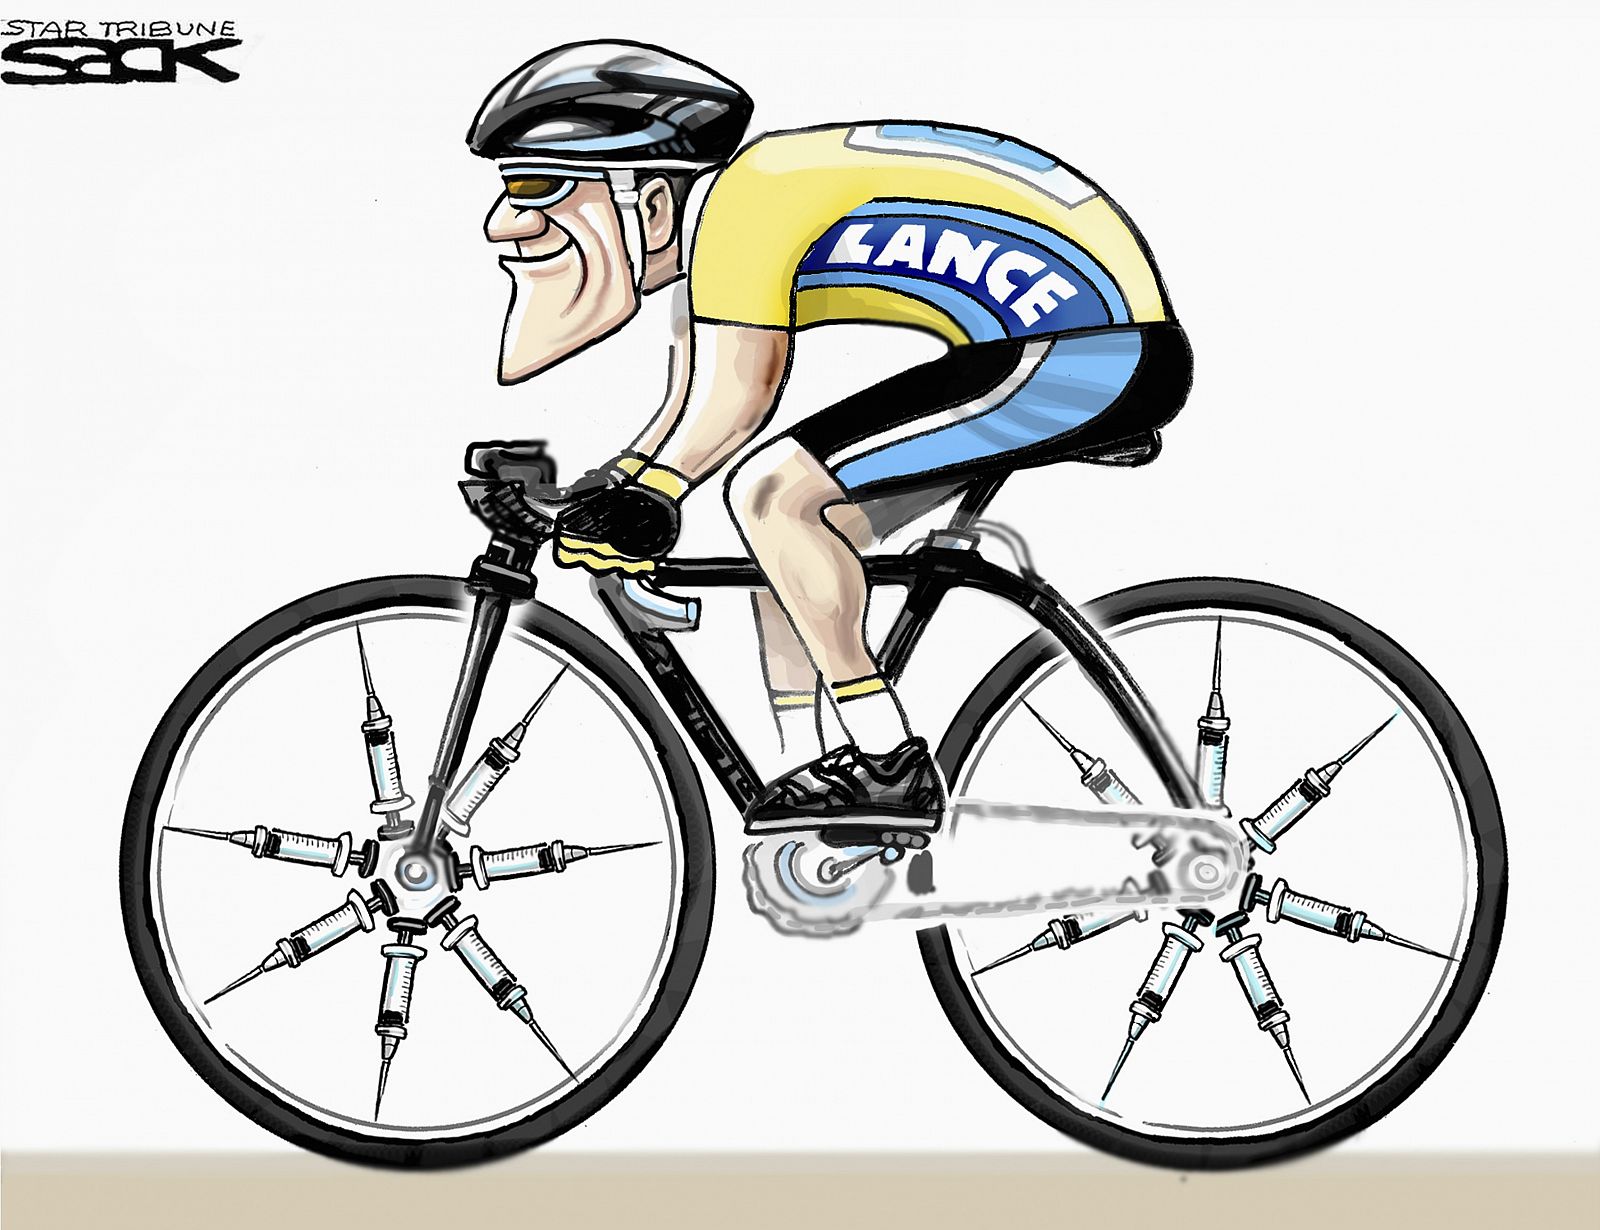 Caricatura sobre el dopaje de Lance Armstrong ganadora del Premio Pulitzer 2013